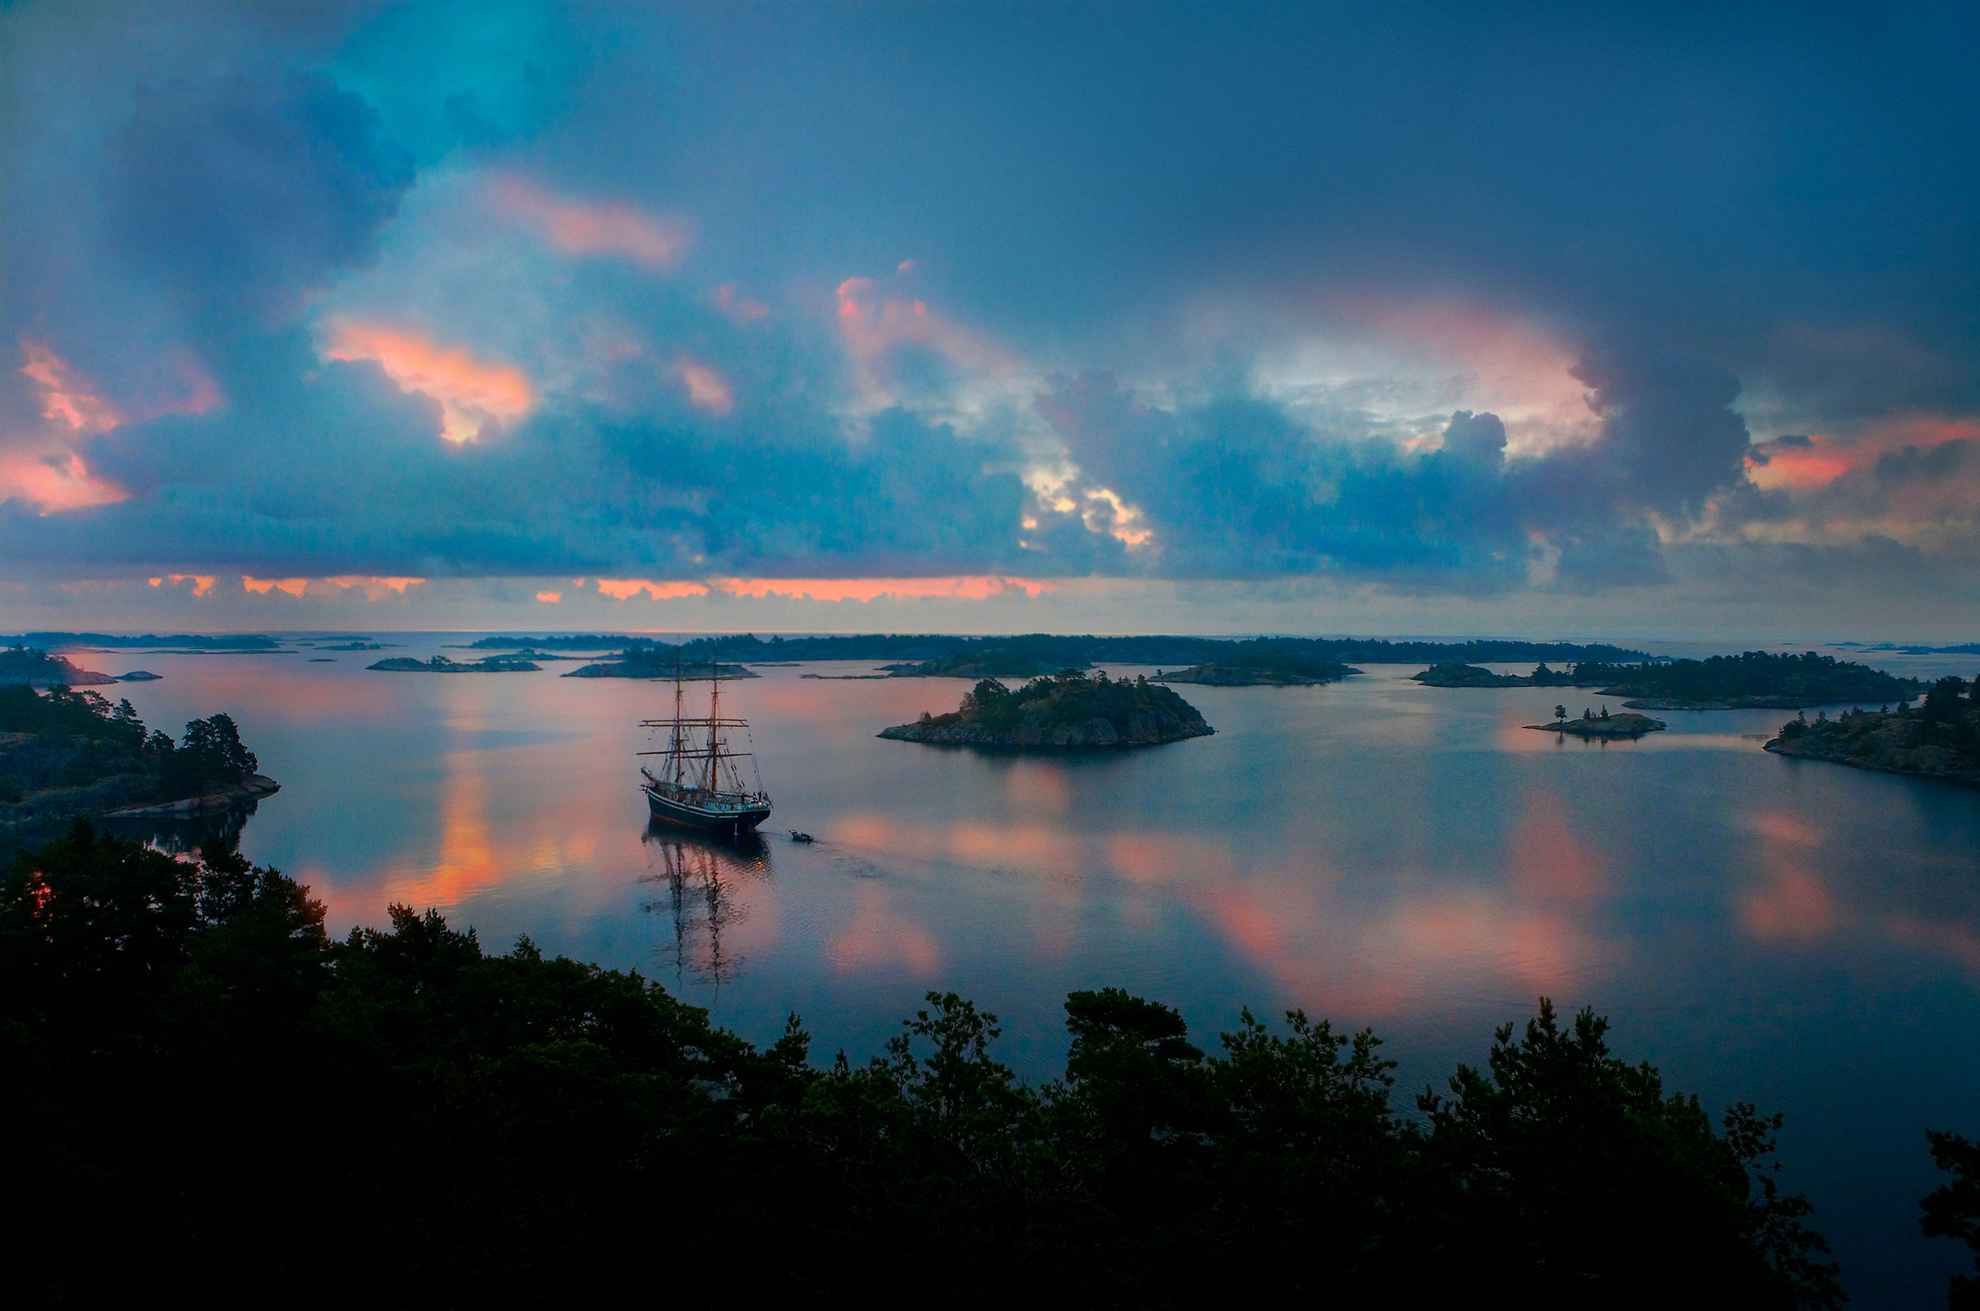 Un voilier se trouve dans l'eau entre les îles de Gryt dans l'archipel d'Östgöta. C'est le soir, l'eau est calme et reflète le ciel et les environs.